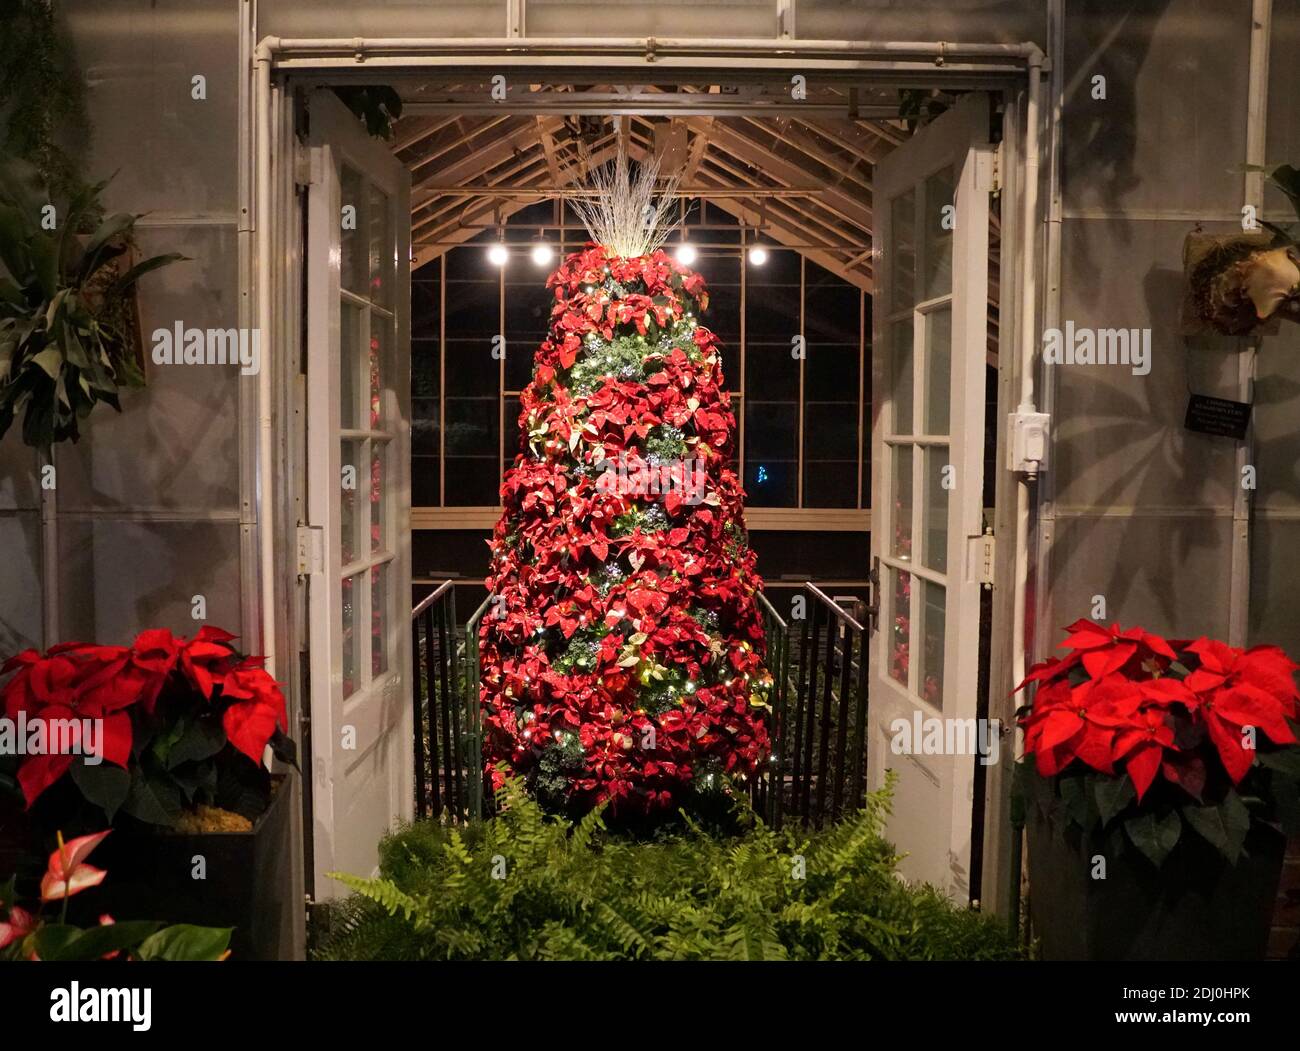 Une porte avec un arbre de Noël décoré de plantes de poinsettia rouges Banque D'Images